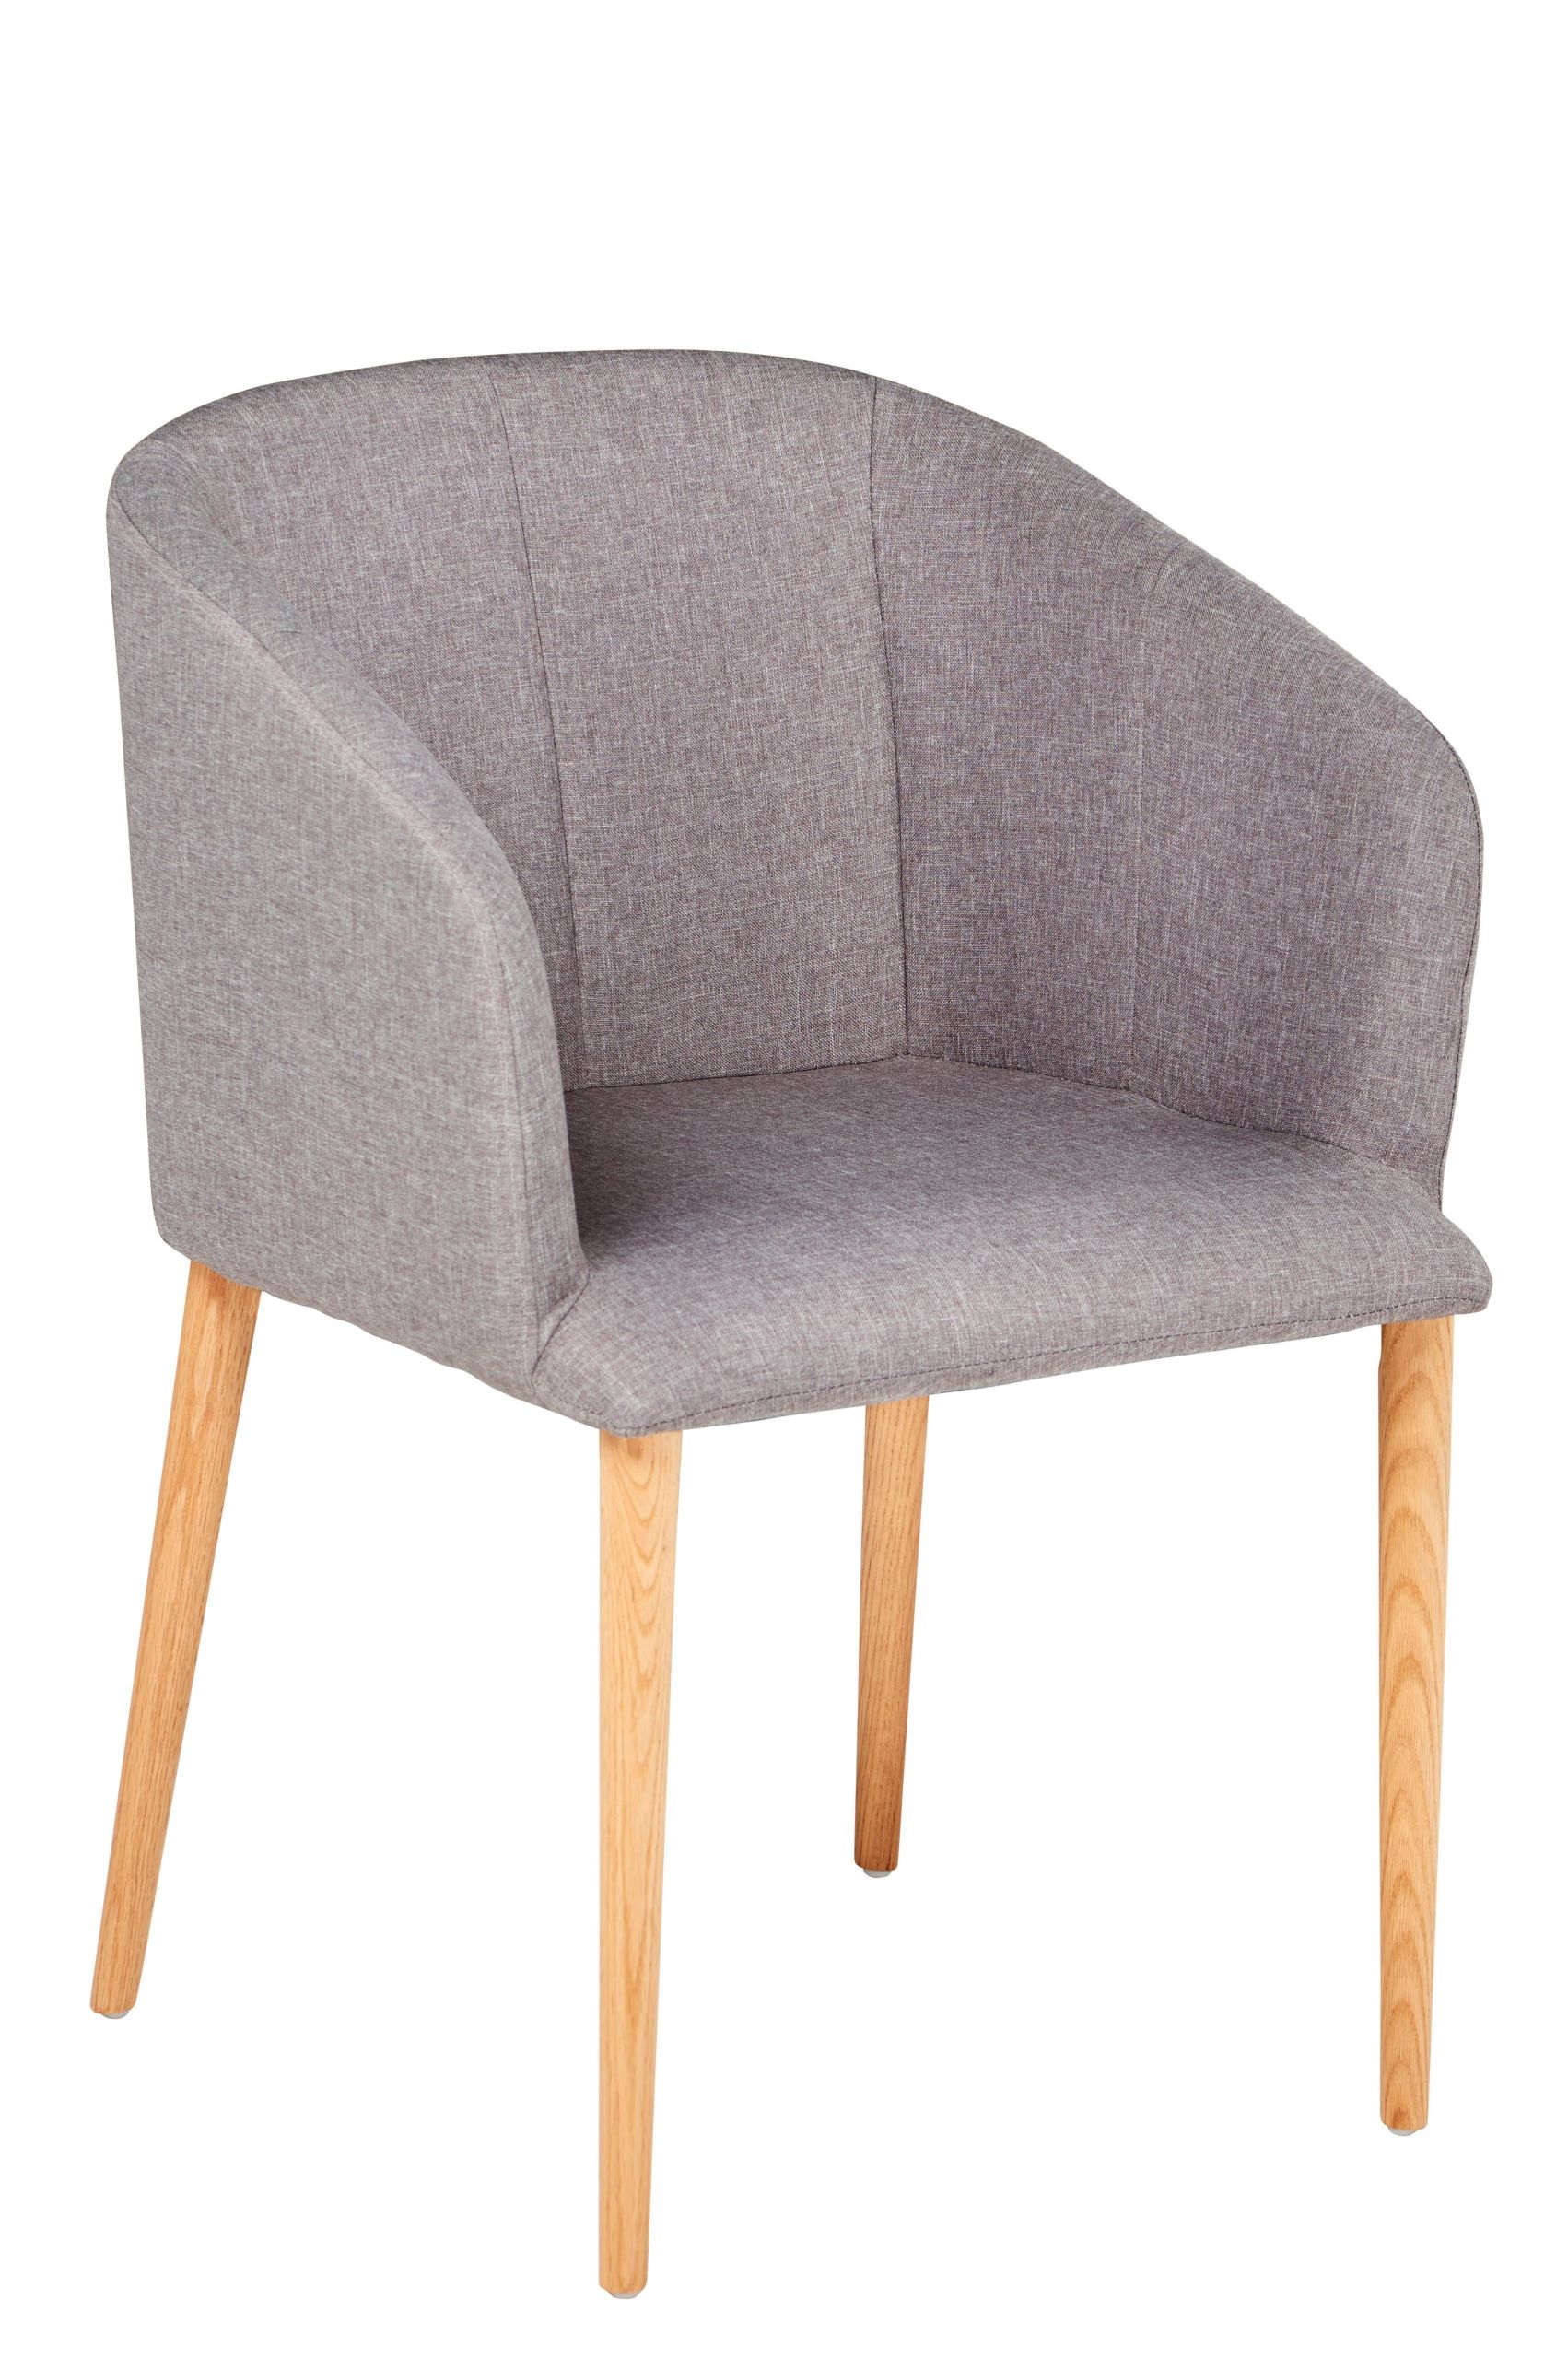 fauteuil doublure en coton gris carrefour home decoration brillant clic clac 8bc d7a4b4f44b0886bdd6420